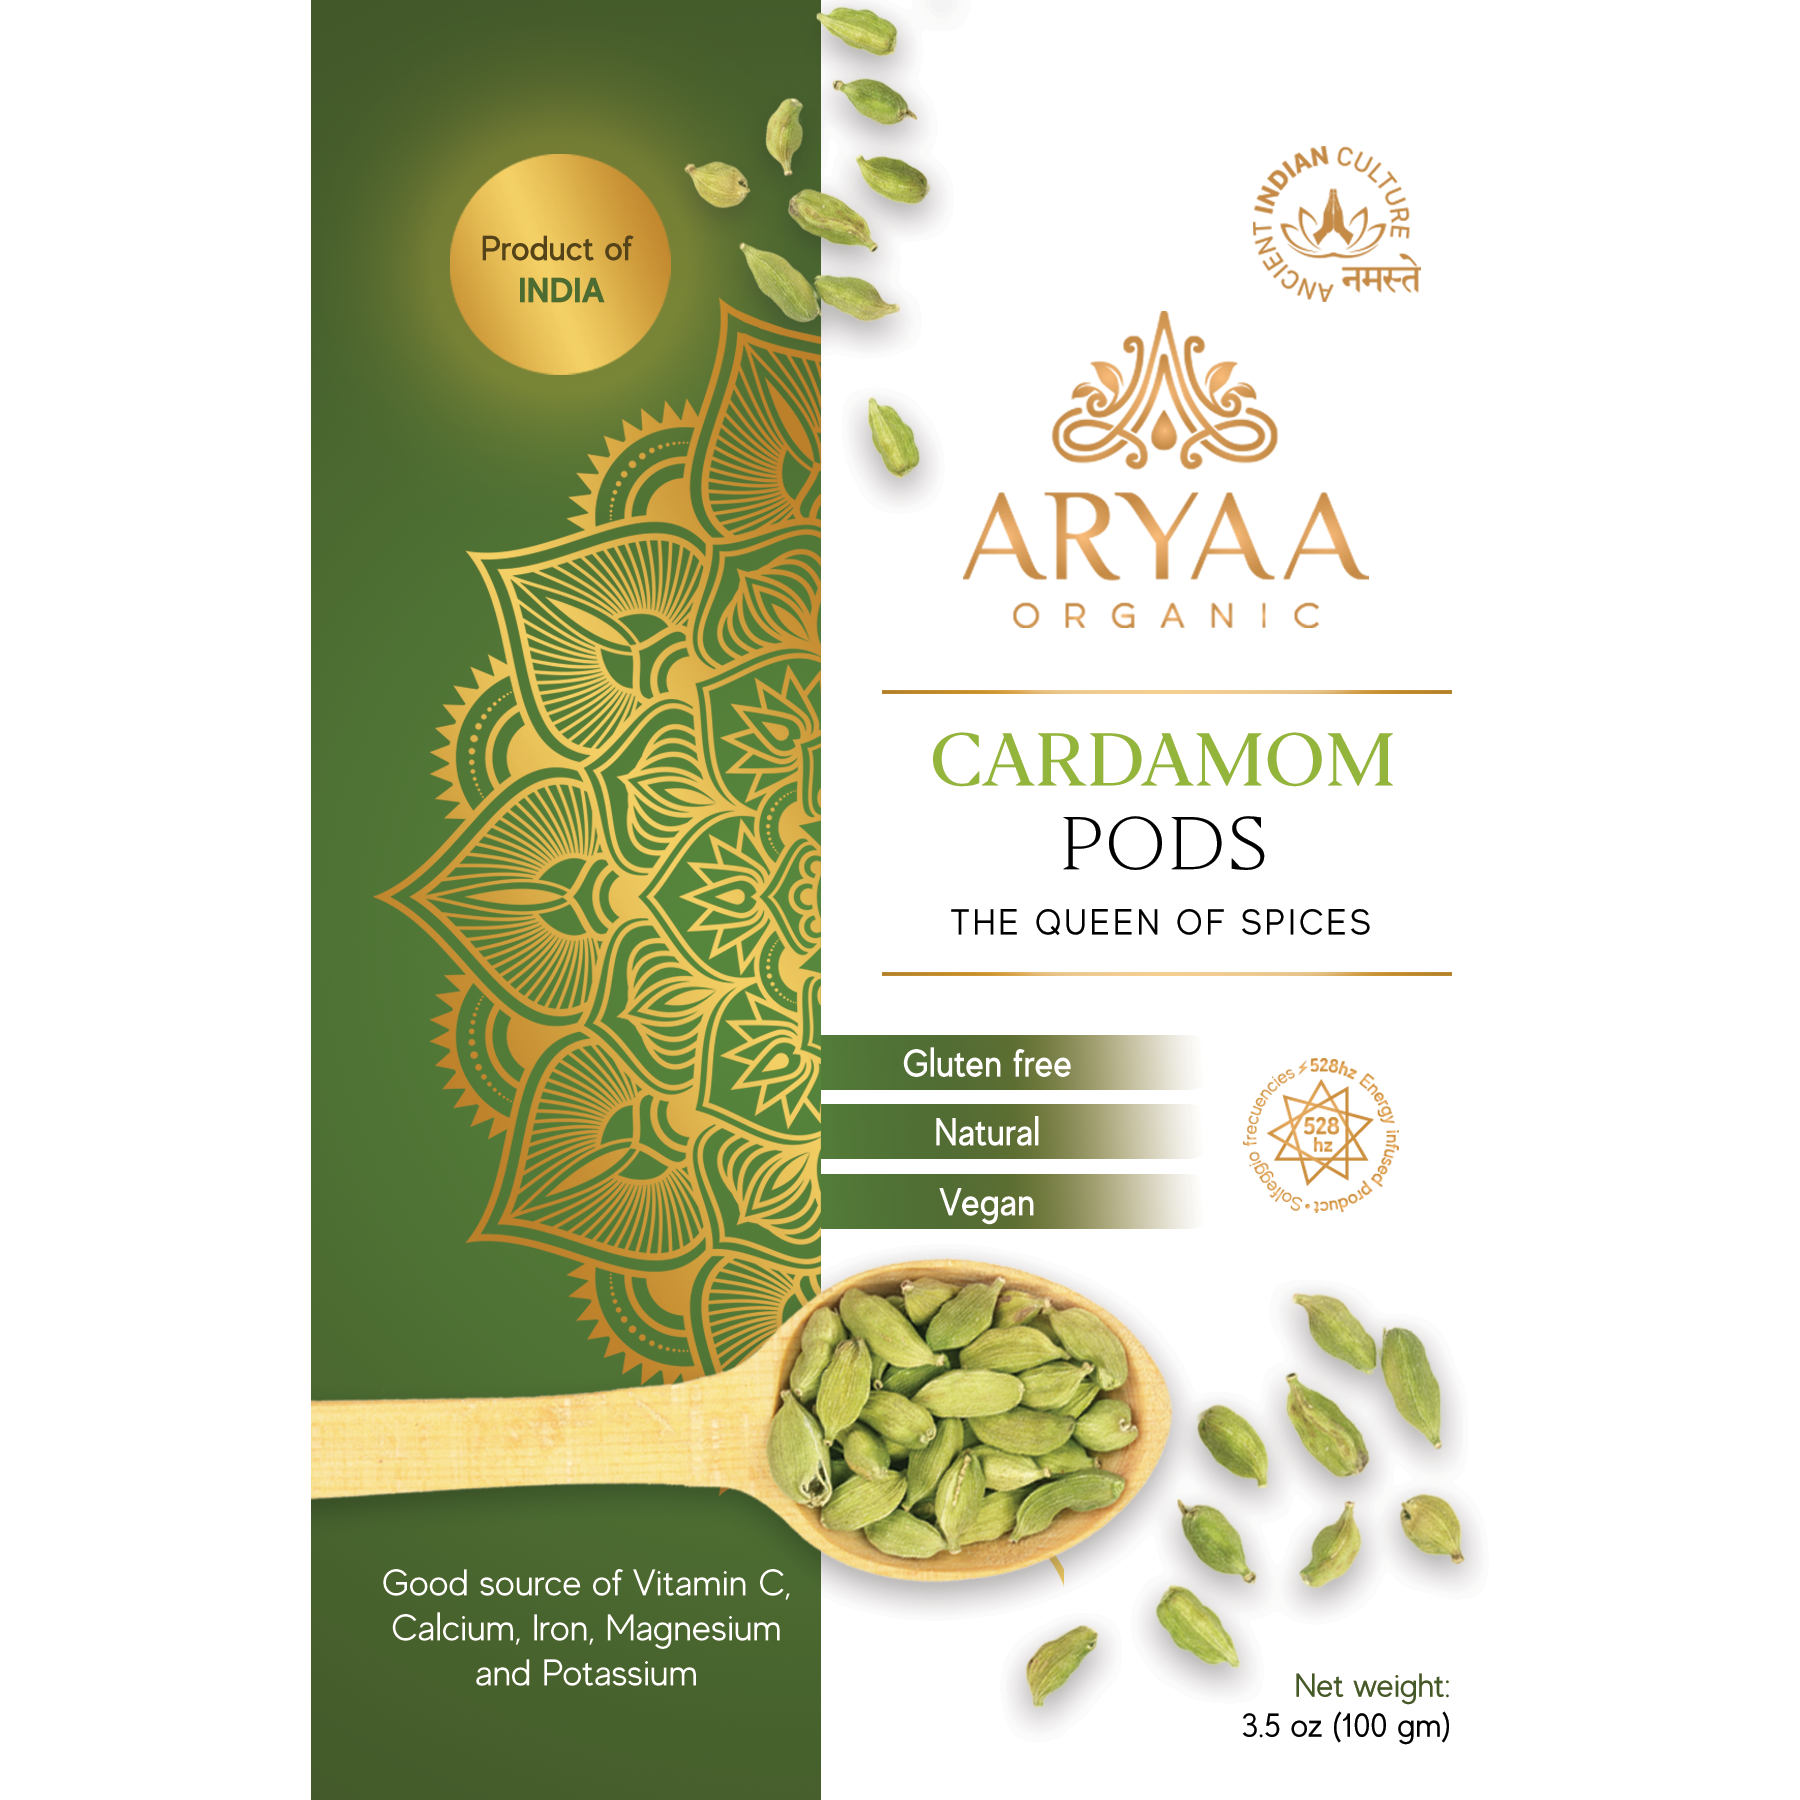 Aryaa Organic Cardamom Pods from India